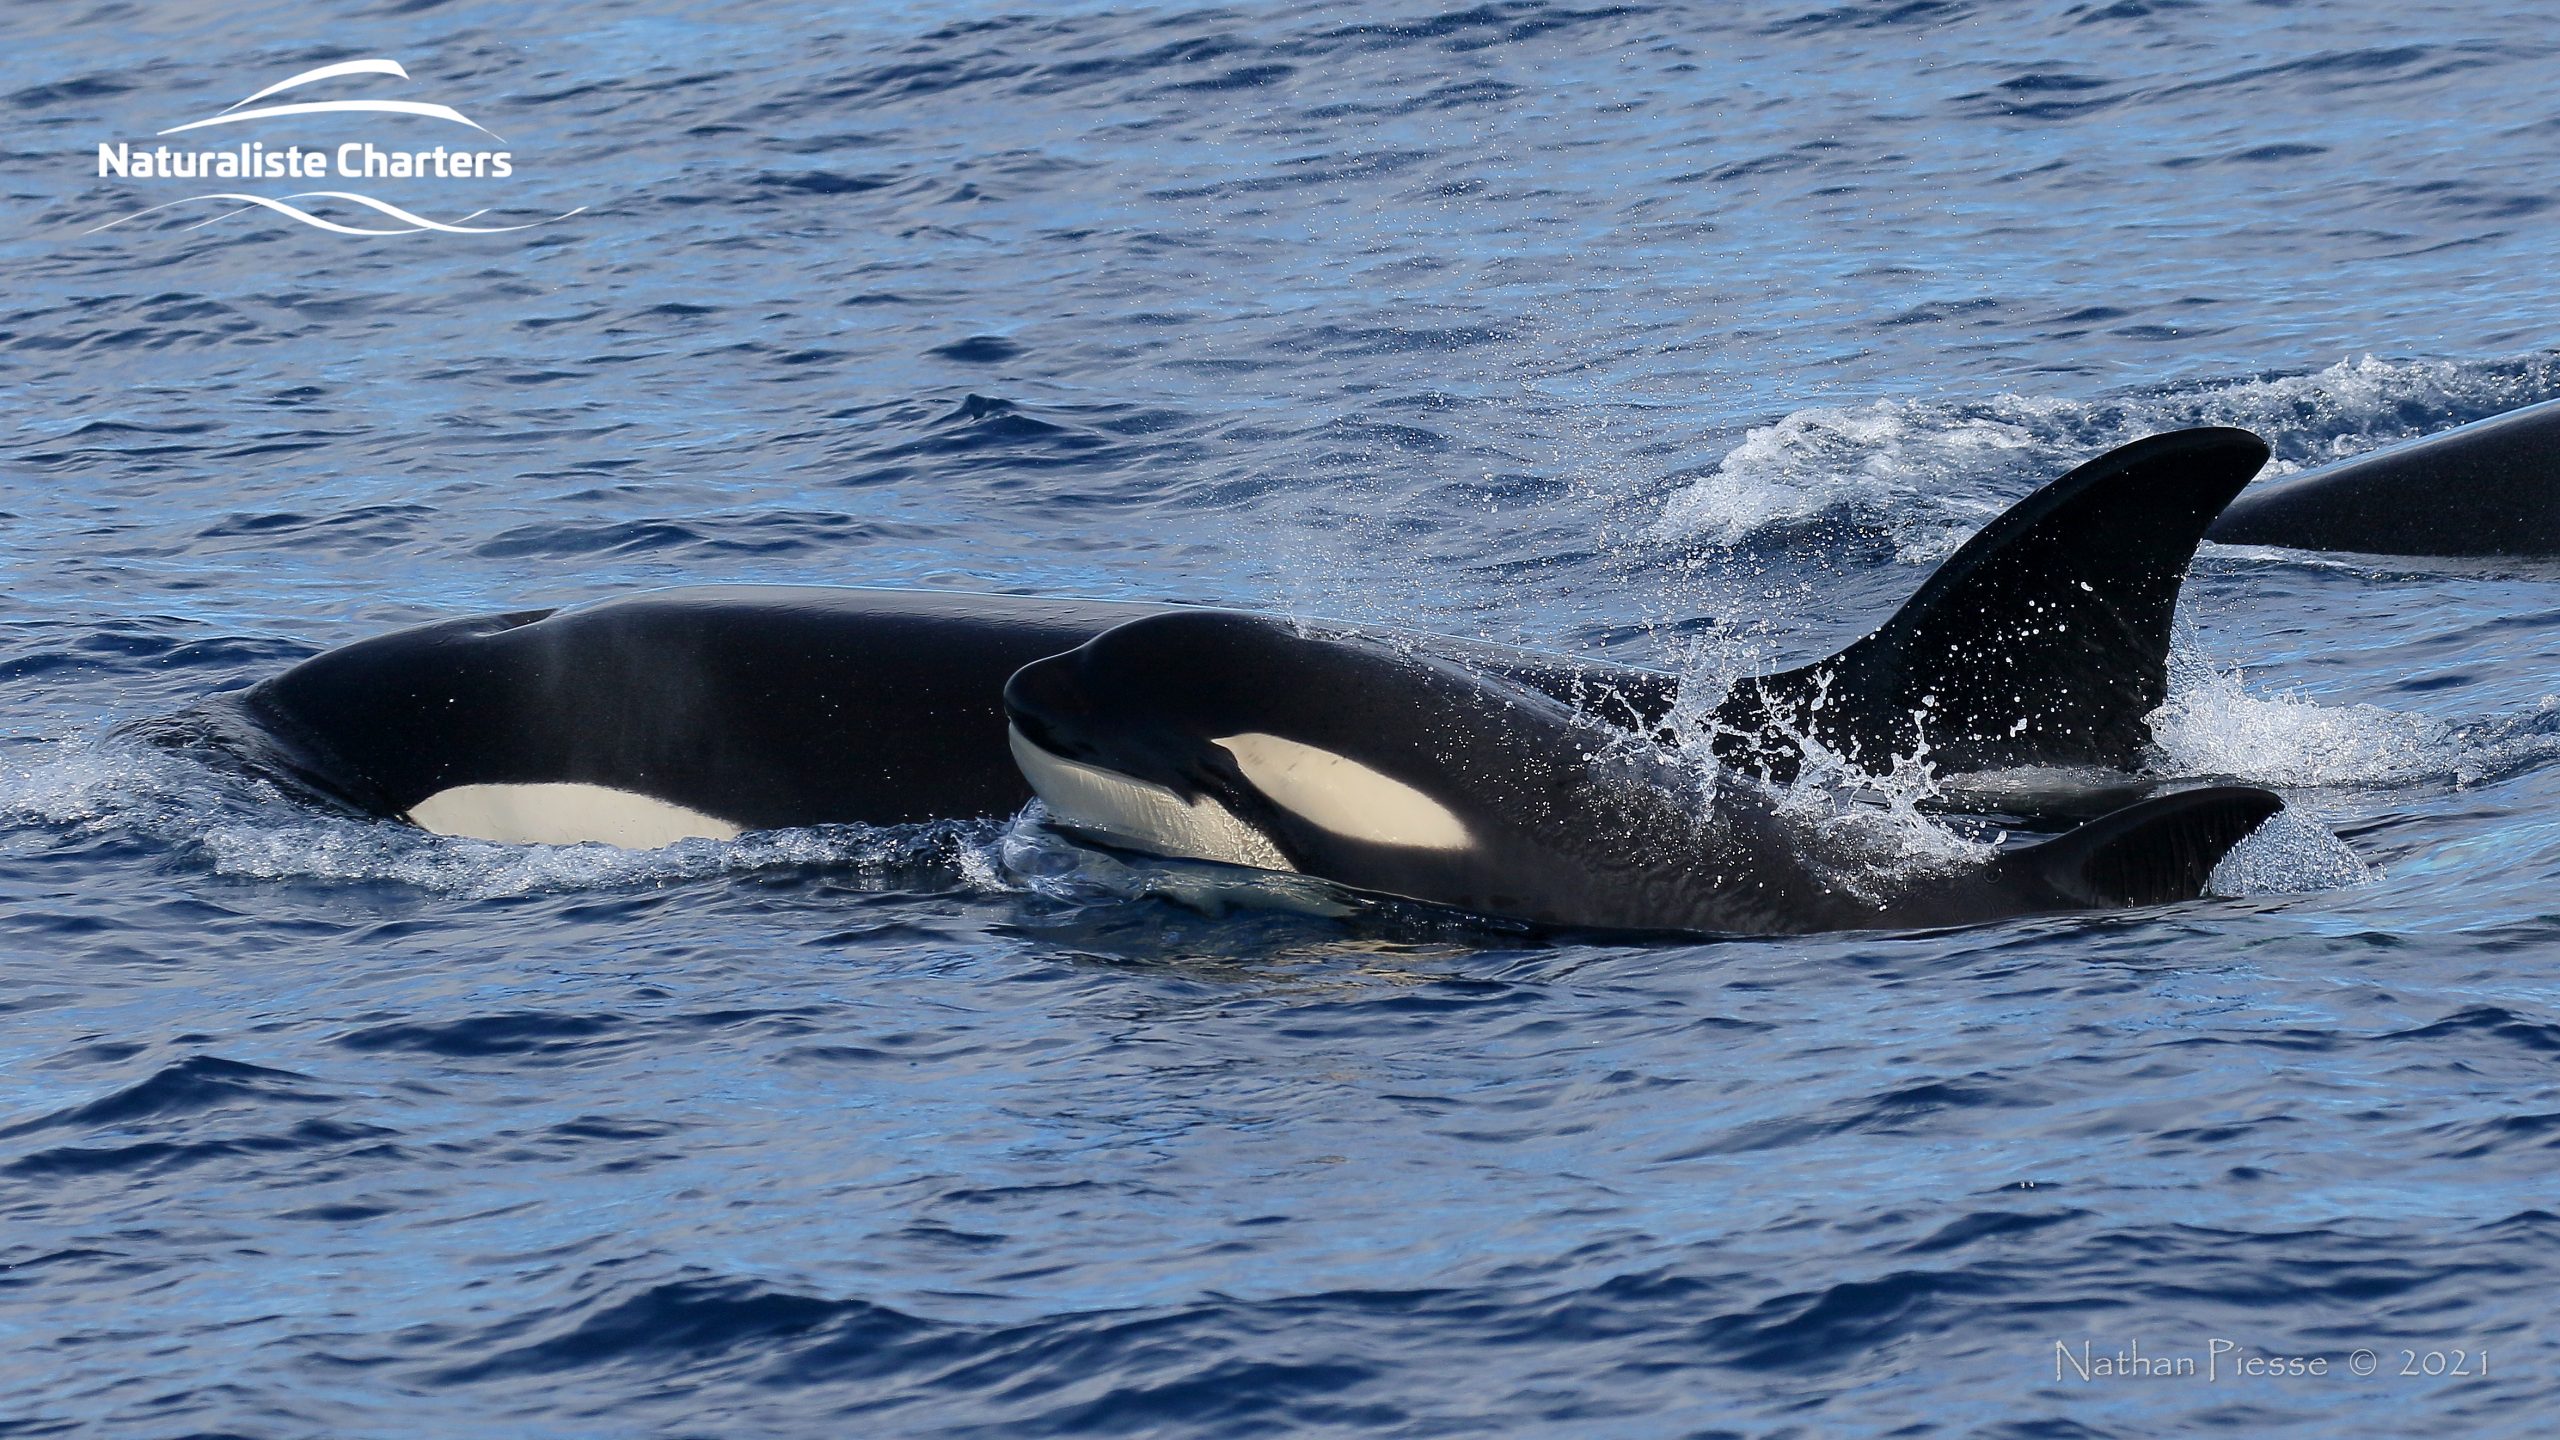 orca - killer whale